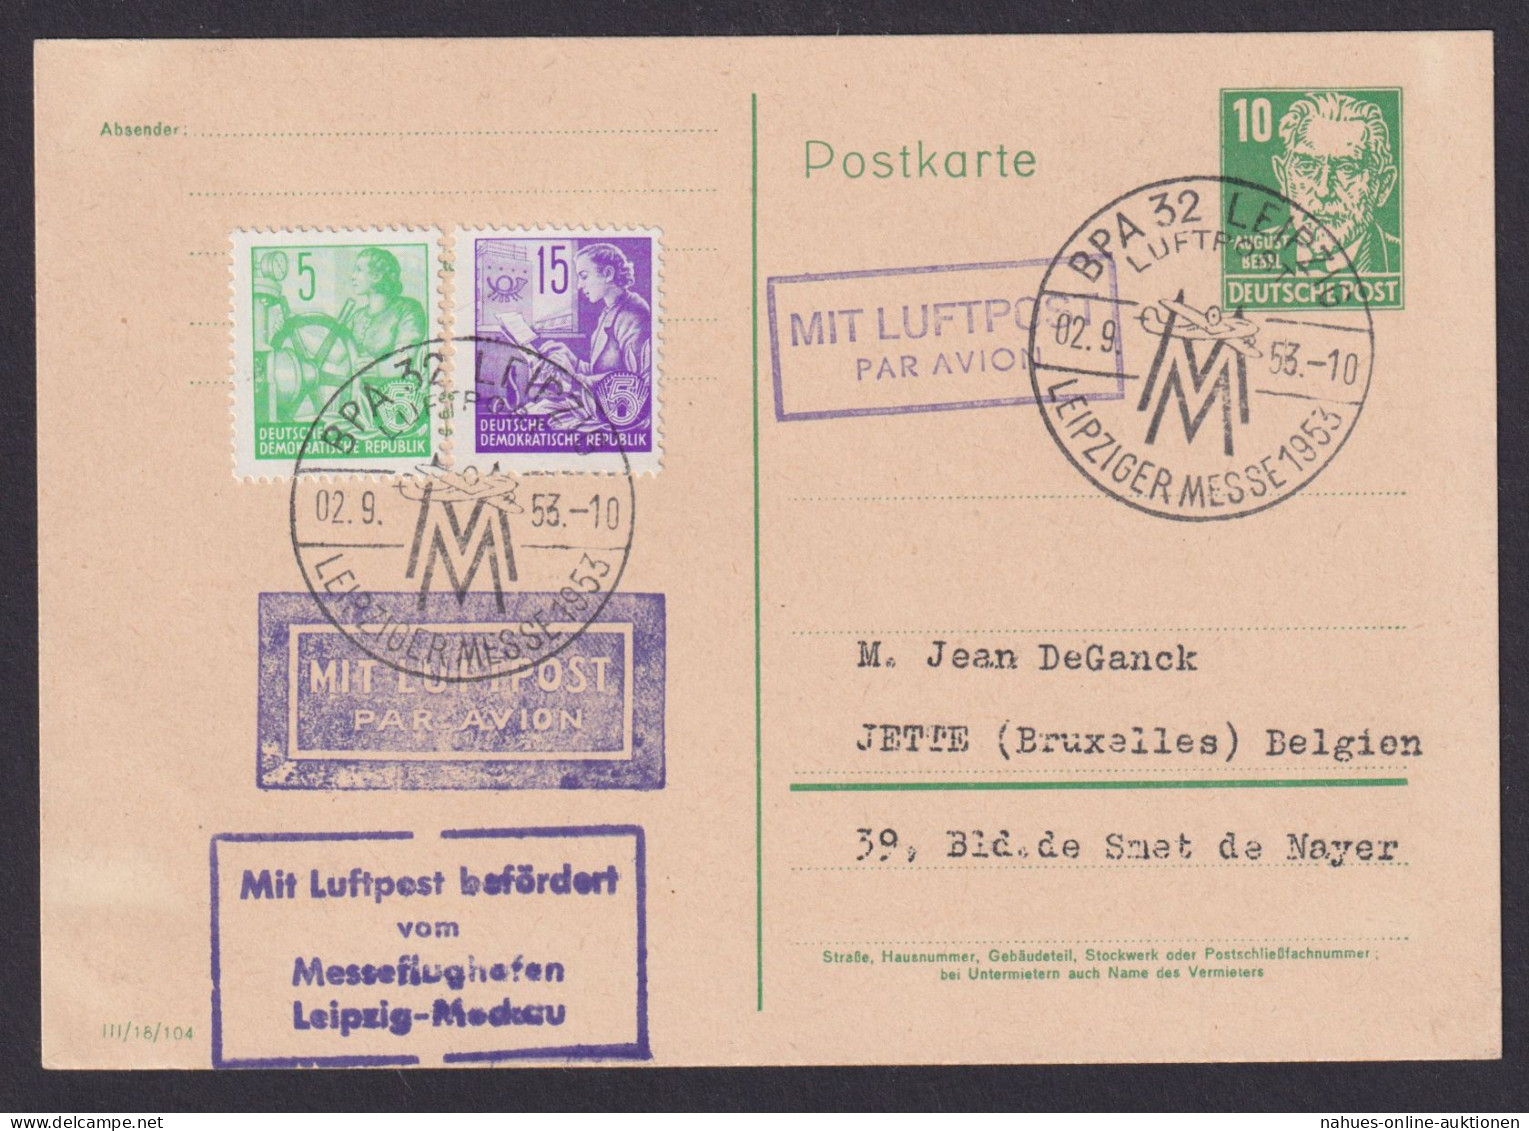 Flugpost Brief Air Mail DDR Ganzsache Köpfe Bebel P 41 II C K1 BPA 32 Leipzig - Postkaarten - Gebruikt